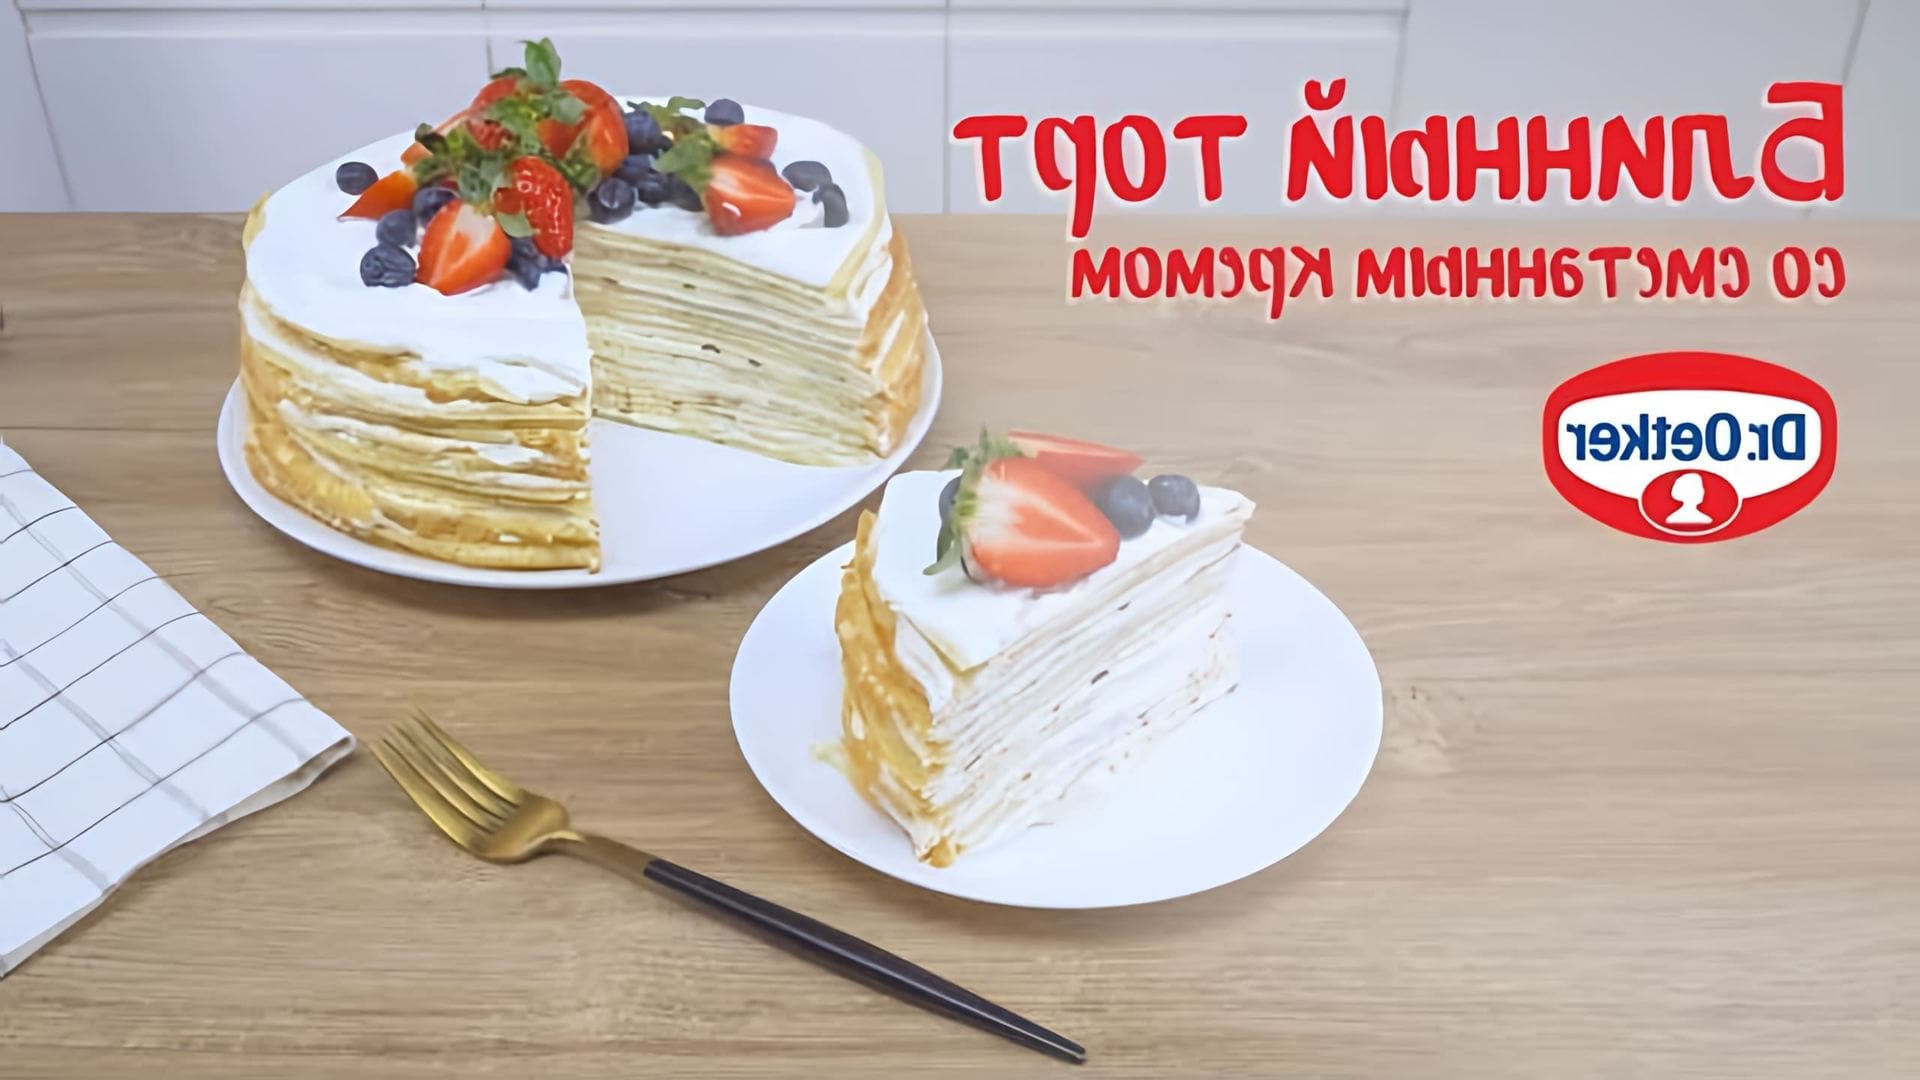 В этом видео демонстрируется процесс приготовления блинного торта со сметанным кремом